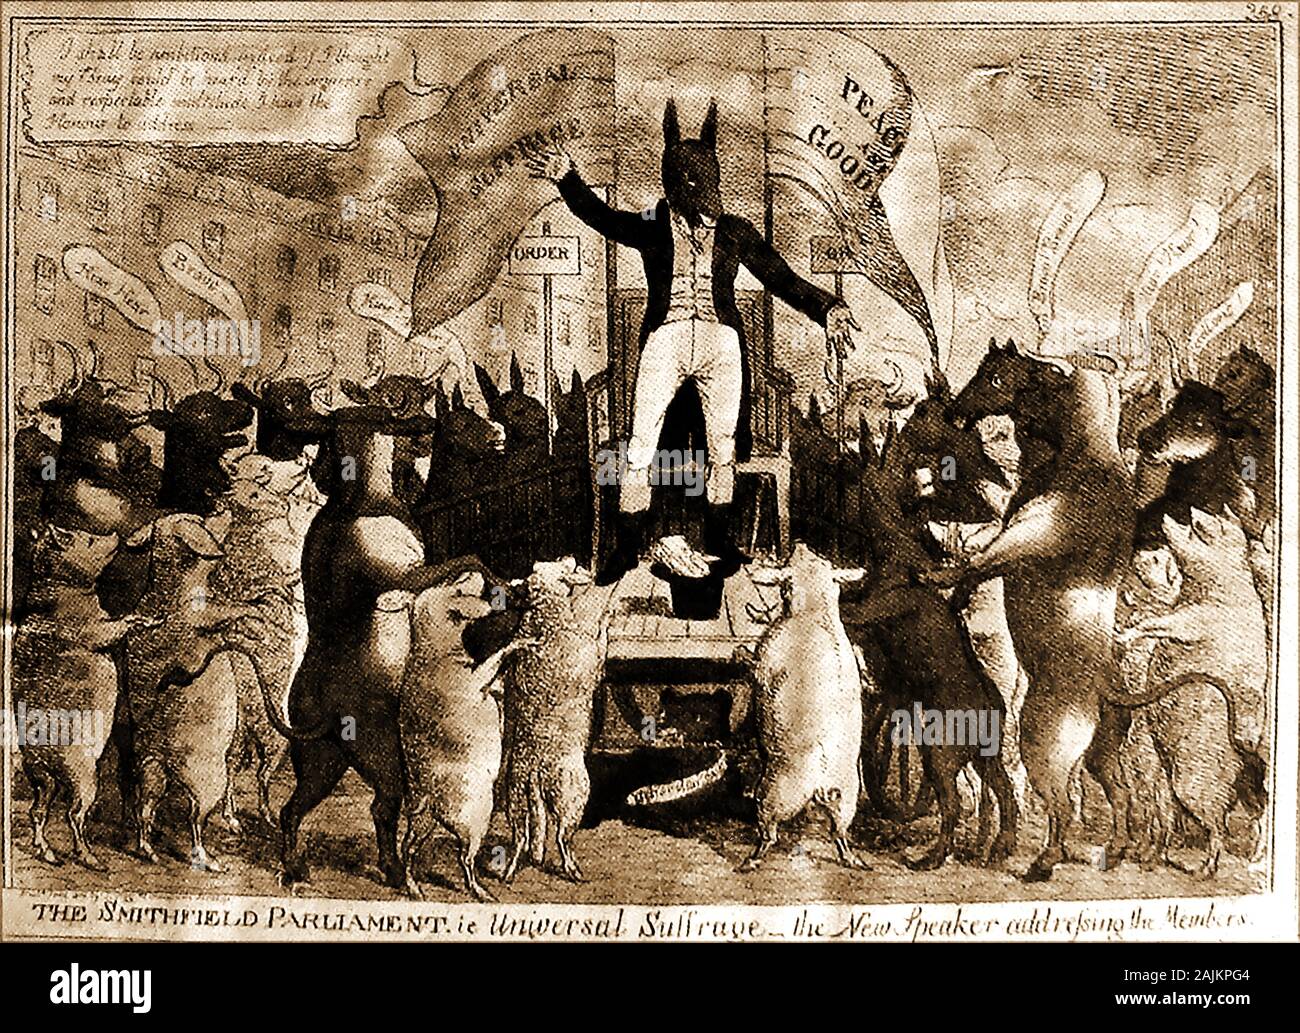 1819 une caricature politique satirique britannique contre le suffrage universel ( voix pour tout le monde) indiquant que l'adoption de telles lois permettrait à même les animaux de vote. Banque D'Images